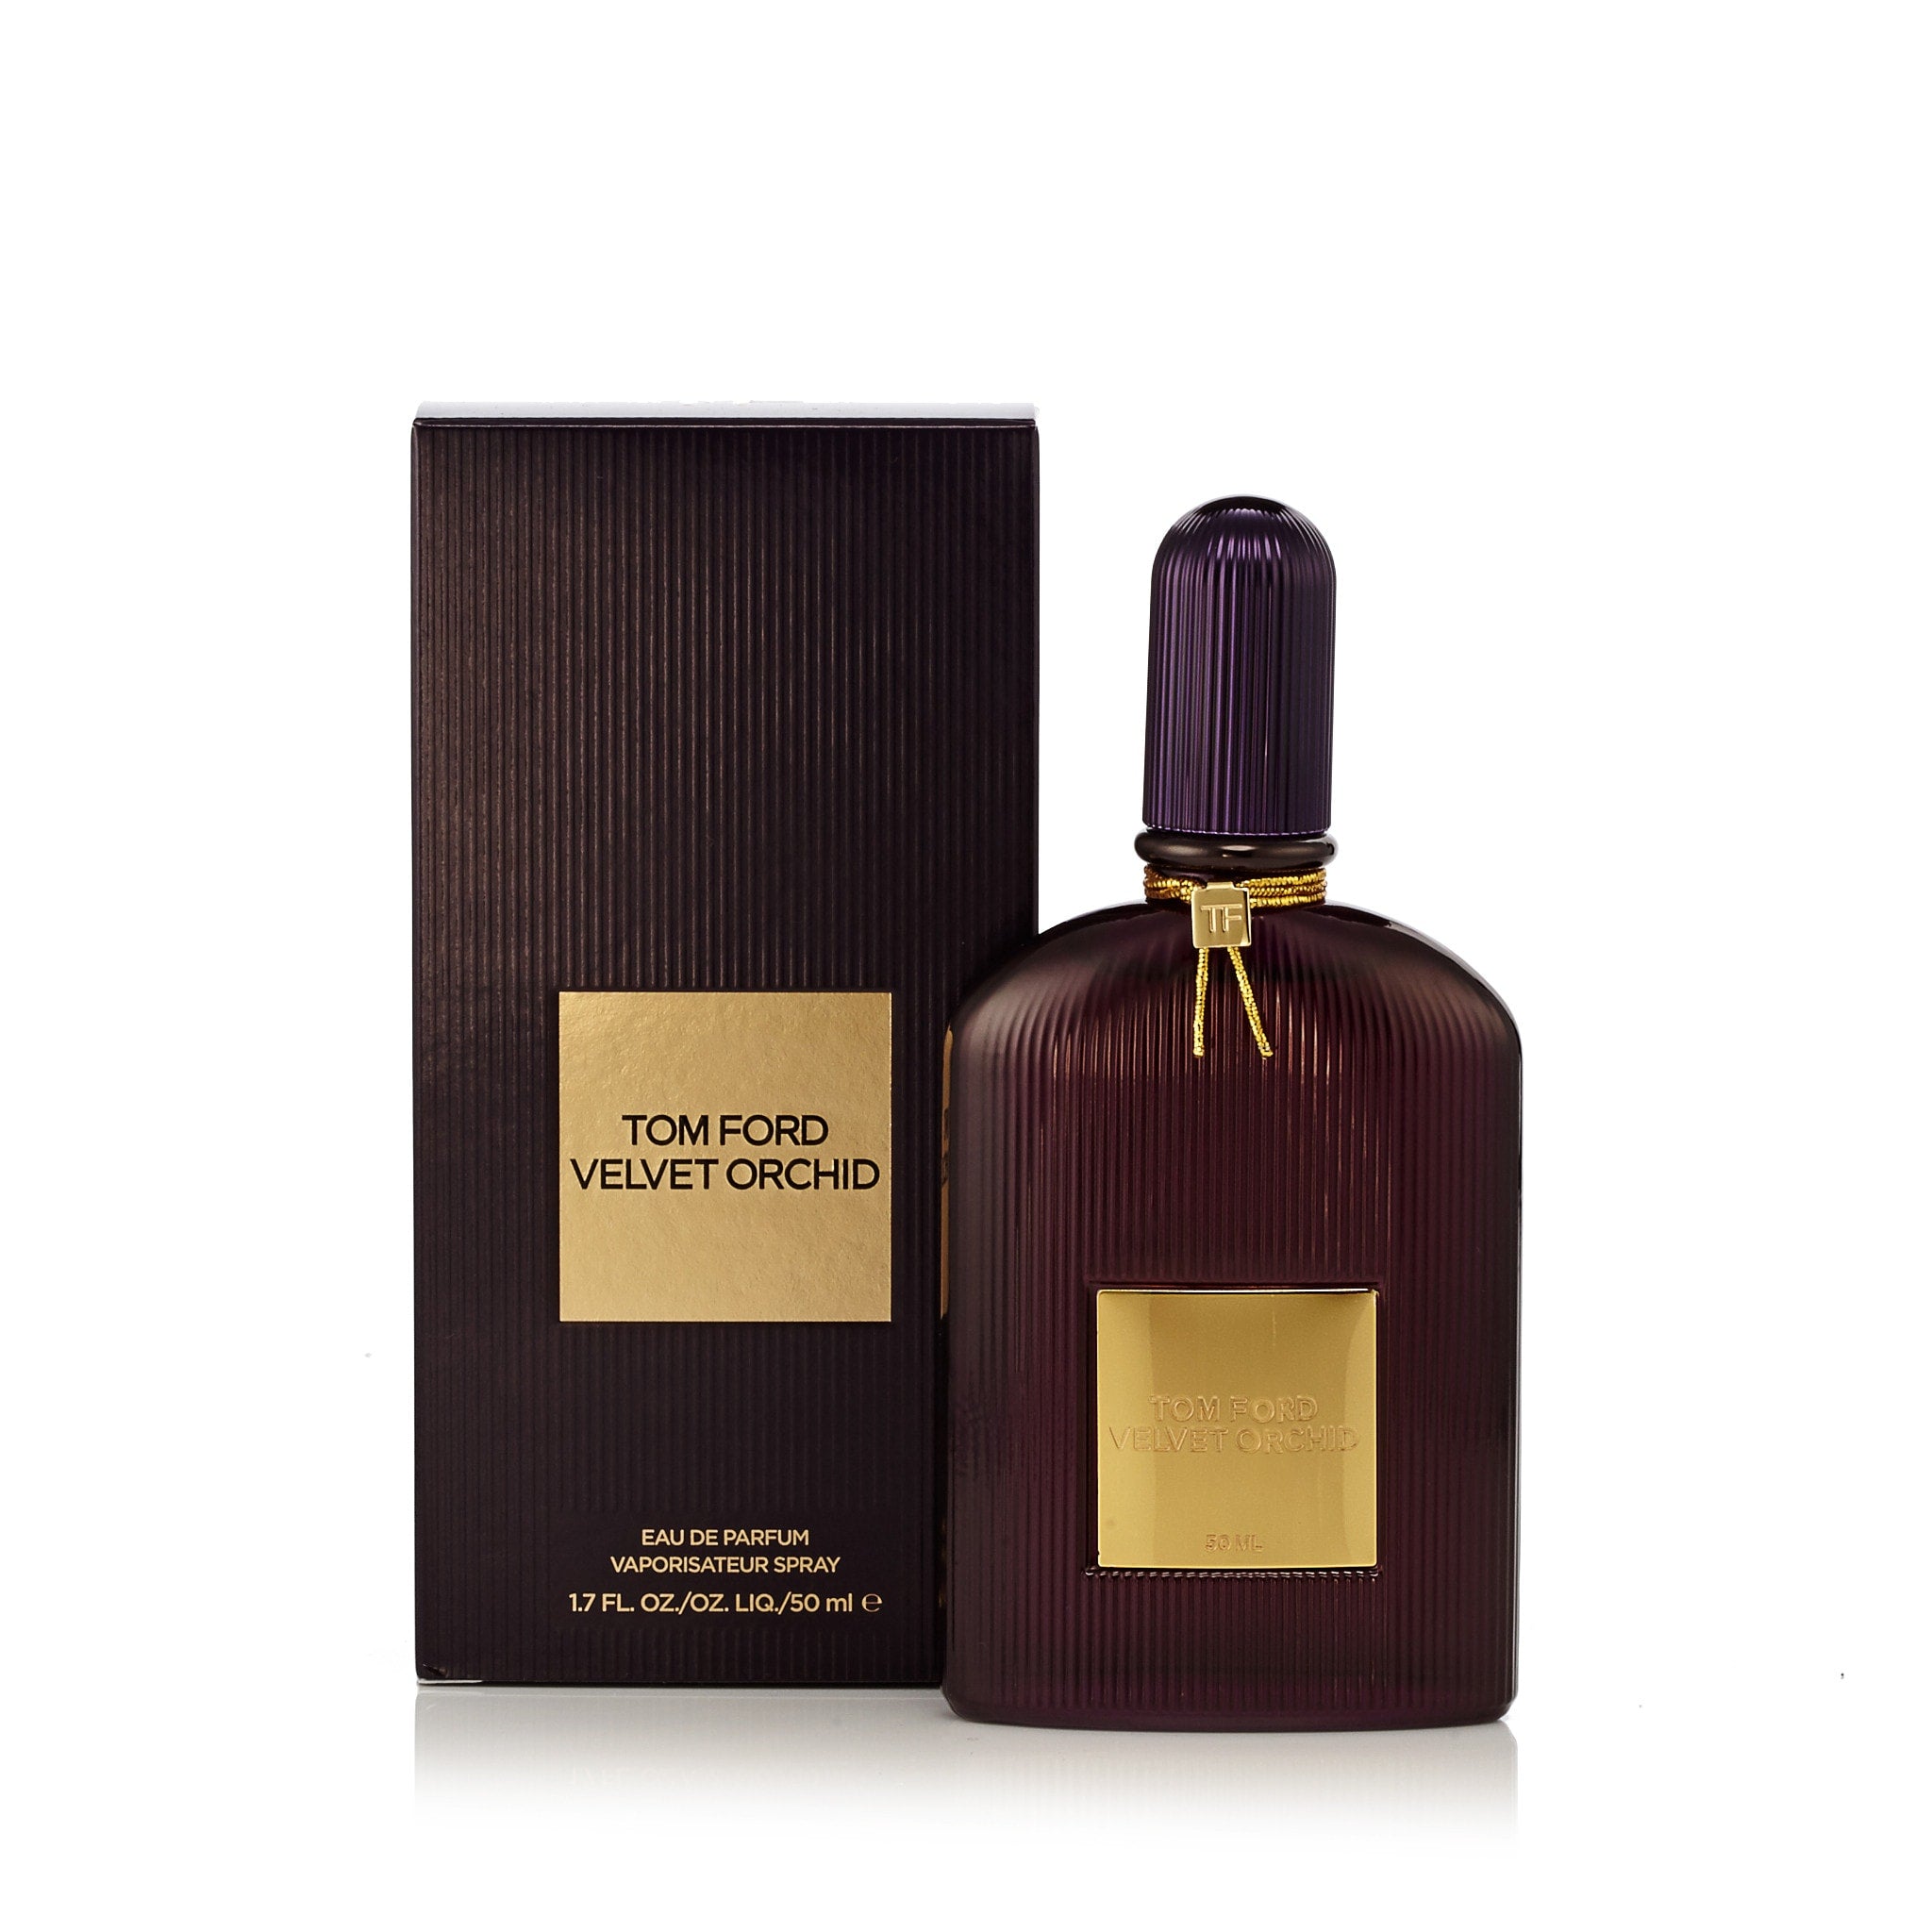 Velvet Eau Parfum Spray for Women and Men by Tom Ford – Fragrance Outlet